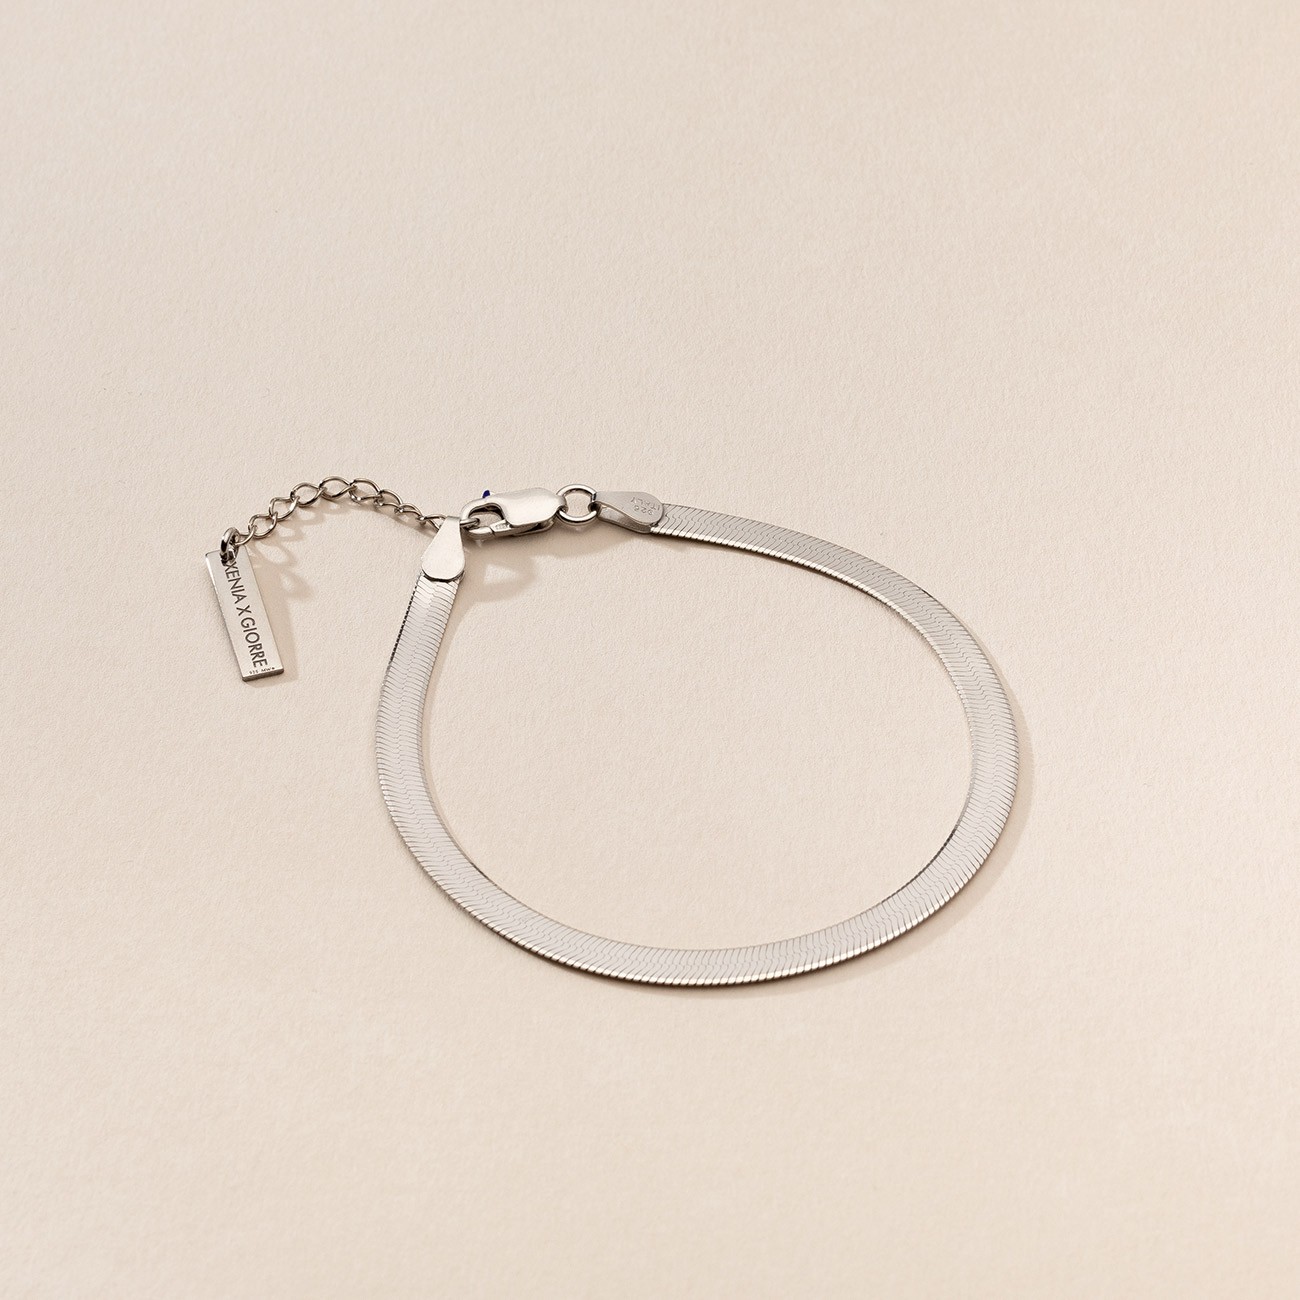 Silver bracelet flat chain sterling silver 925